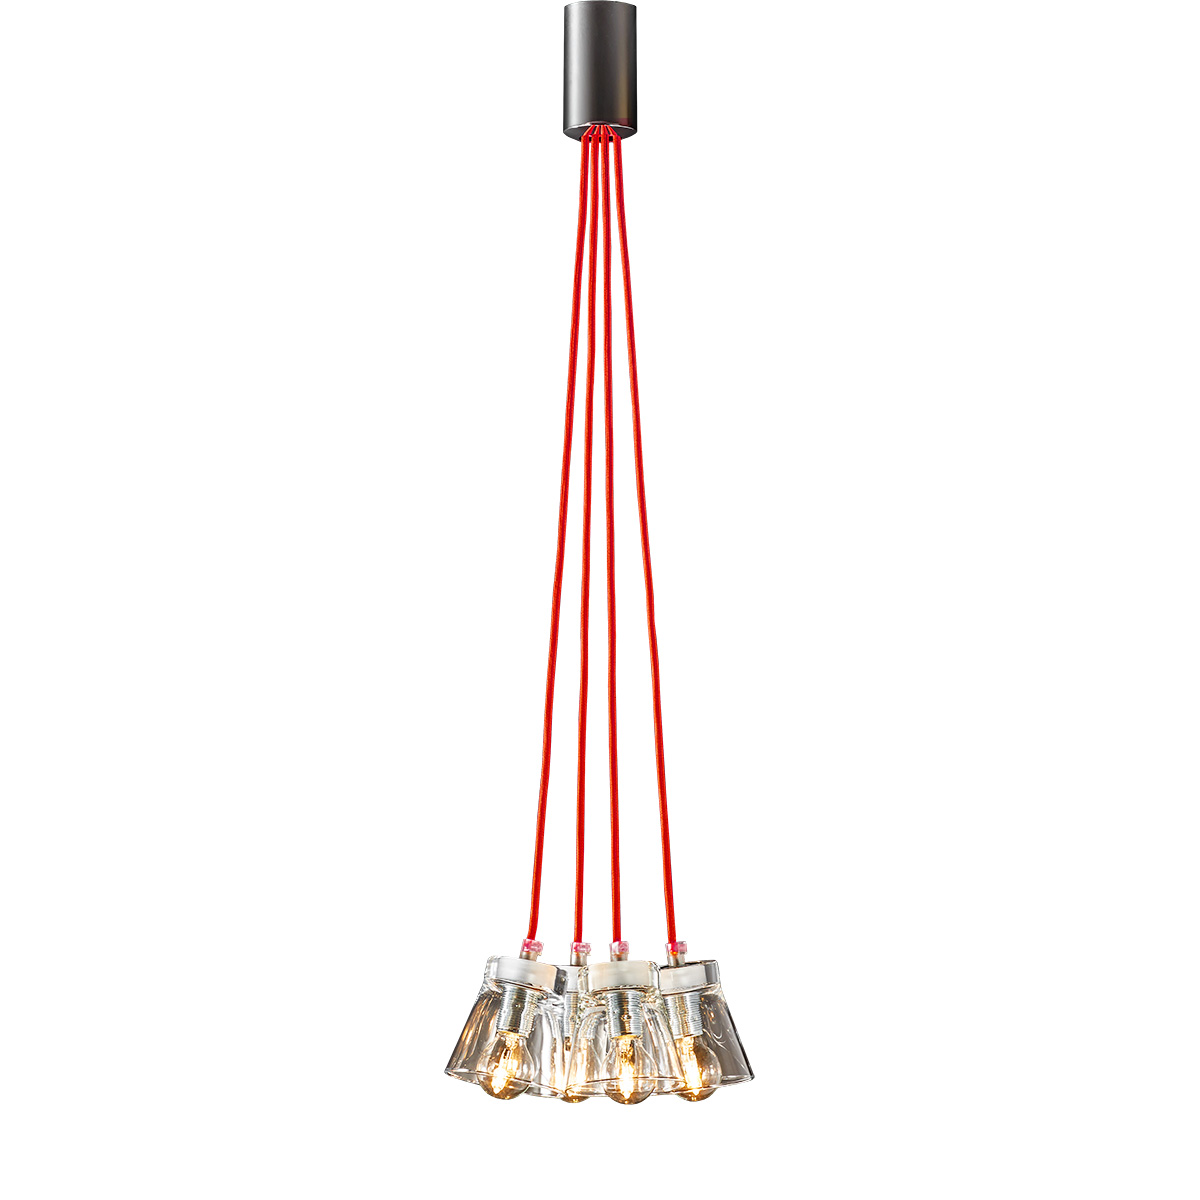 4φωτο μοντέρνο φωτιστικό με κόκκινα καλώδια ΟΥΙΣΚΙ 4-bulb modern pendant with red wires